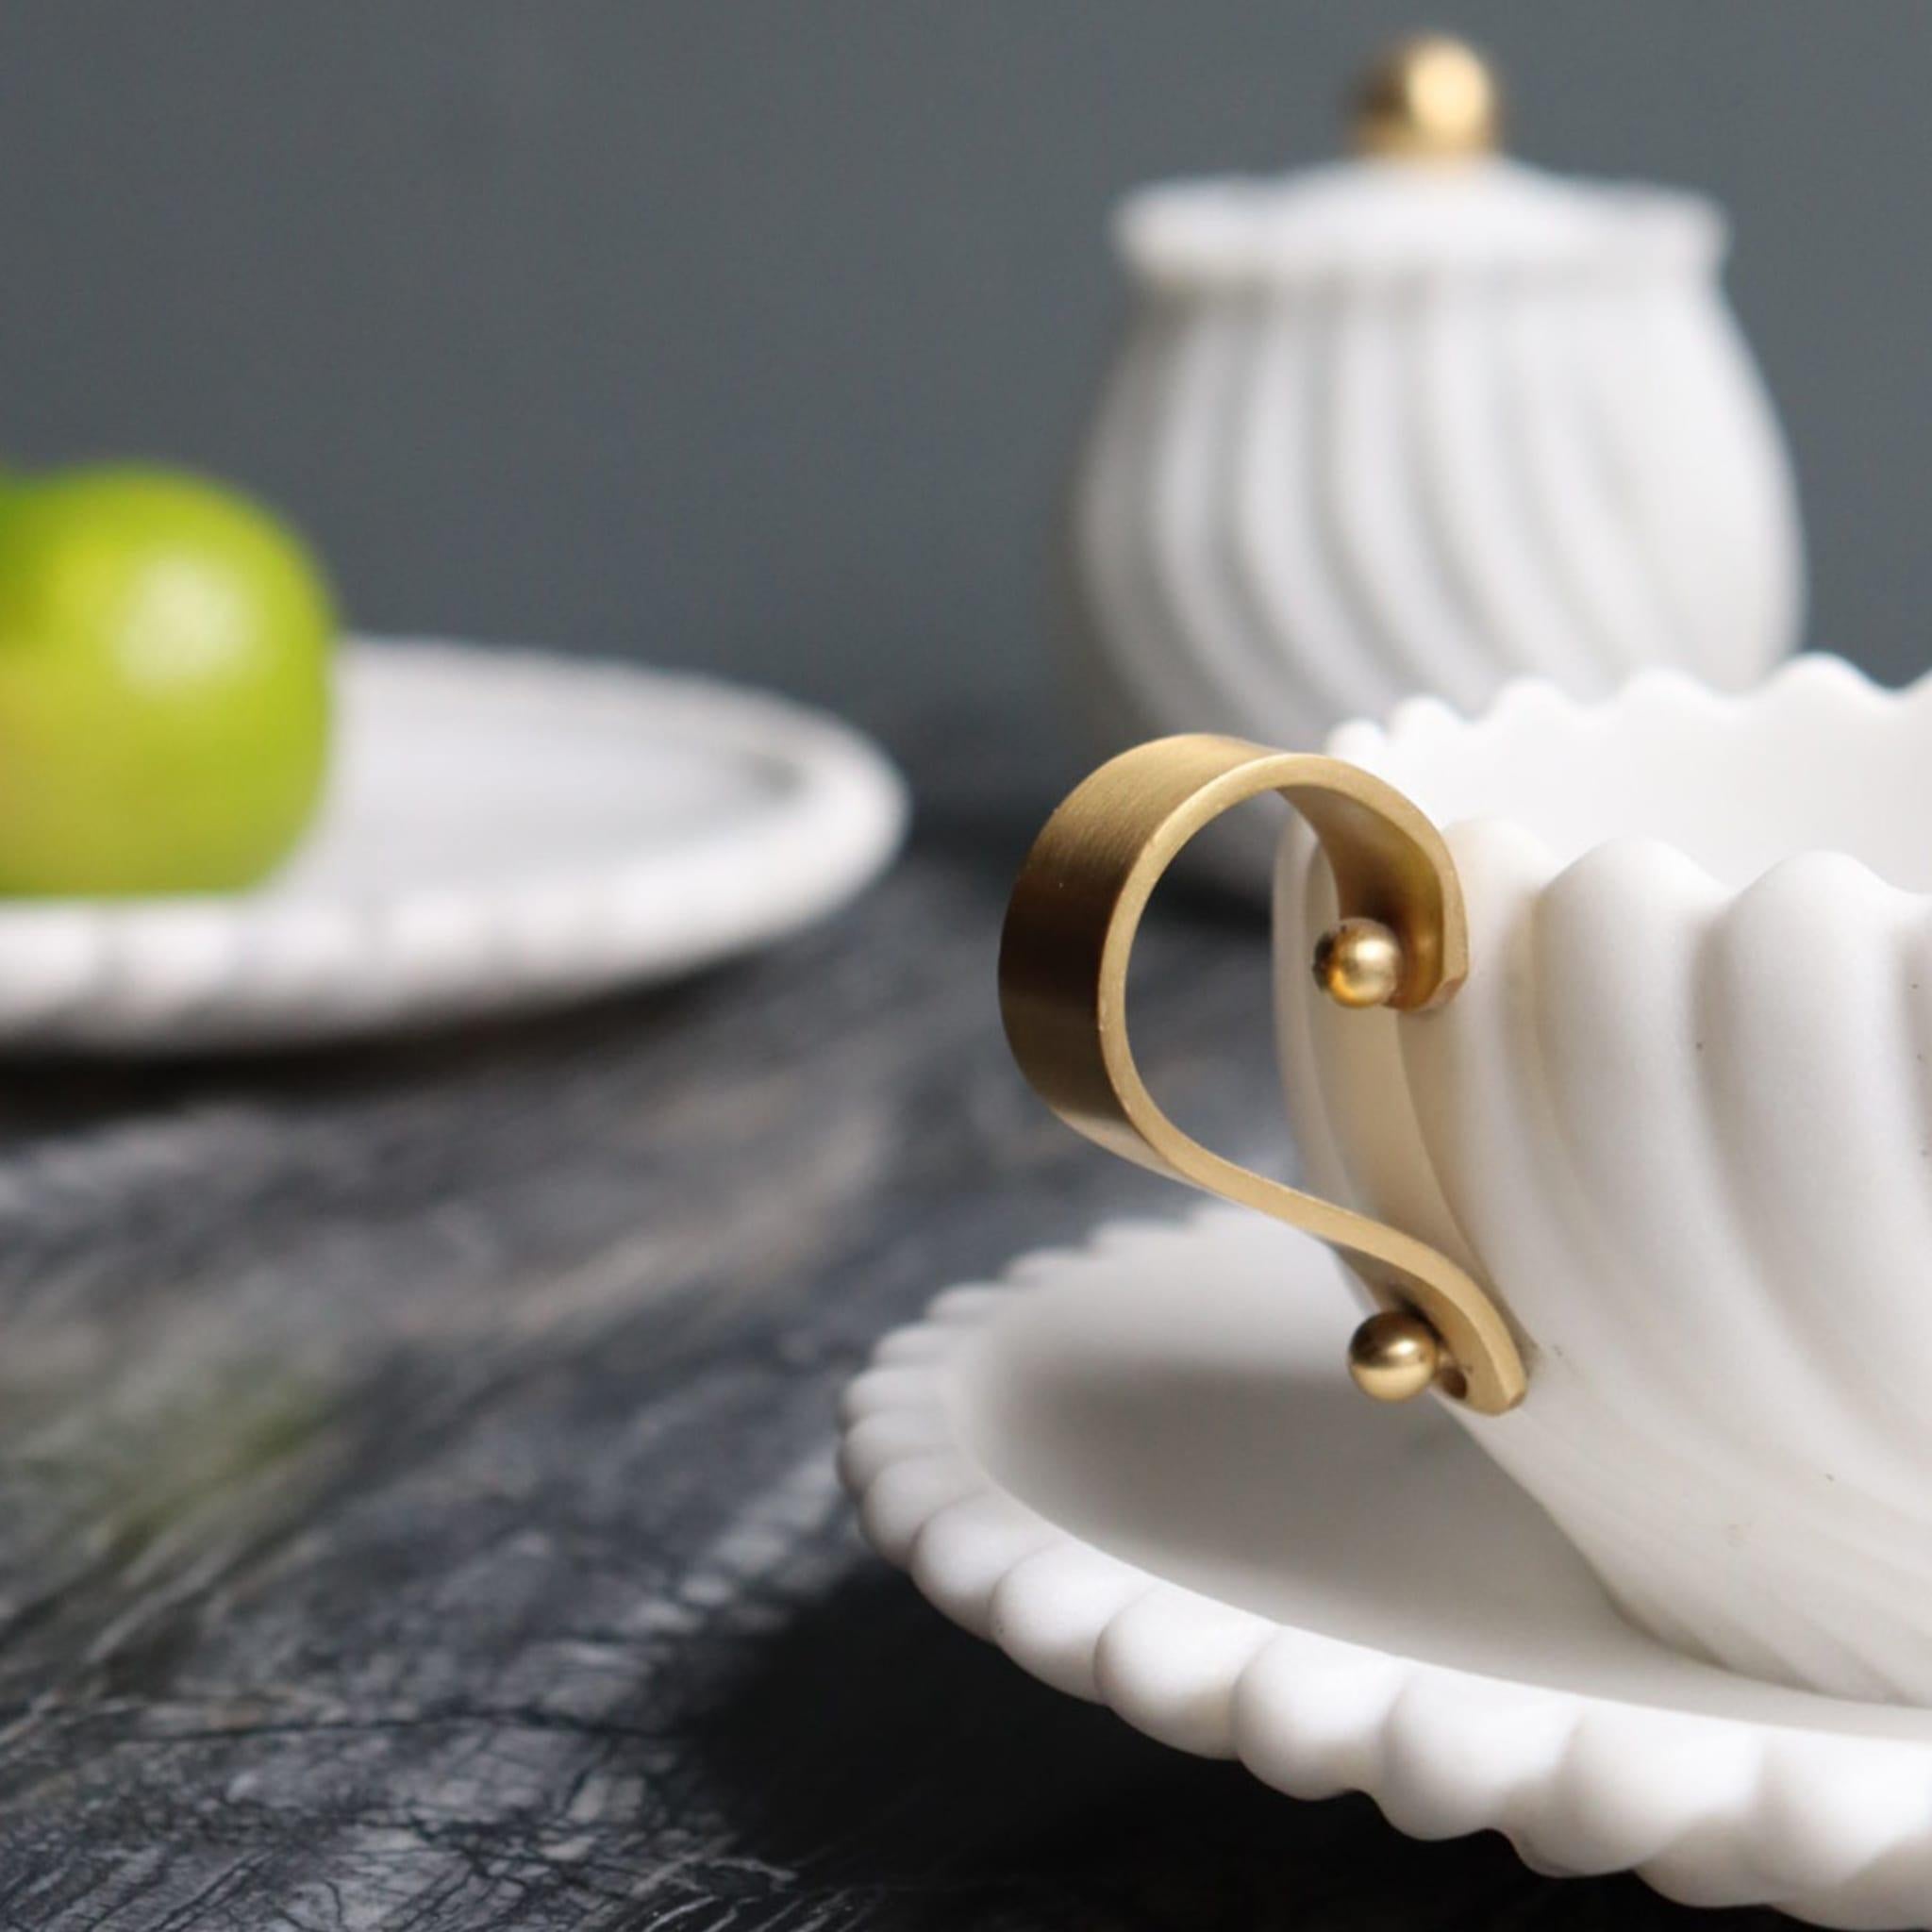 Diese bezaubernde Teetasse mit Untertasse ist Teil des Teesets Victoria, das von der britischen Nachmittagstee-Tradition inspiriert ist und aus Arabescato-Marmor handgefertigt wurde. Der ikonische Edelstein verleiht diesem Schmuckstück einen